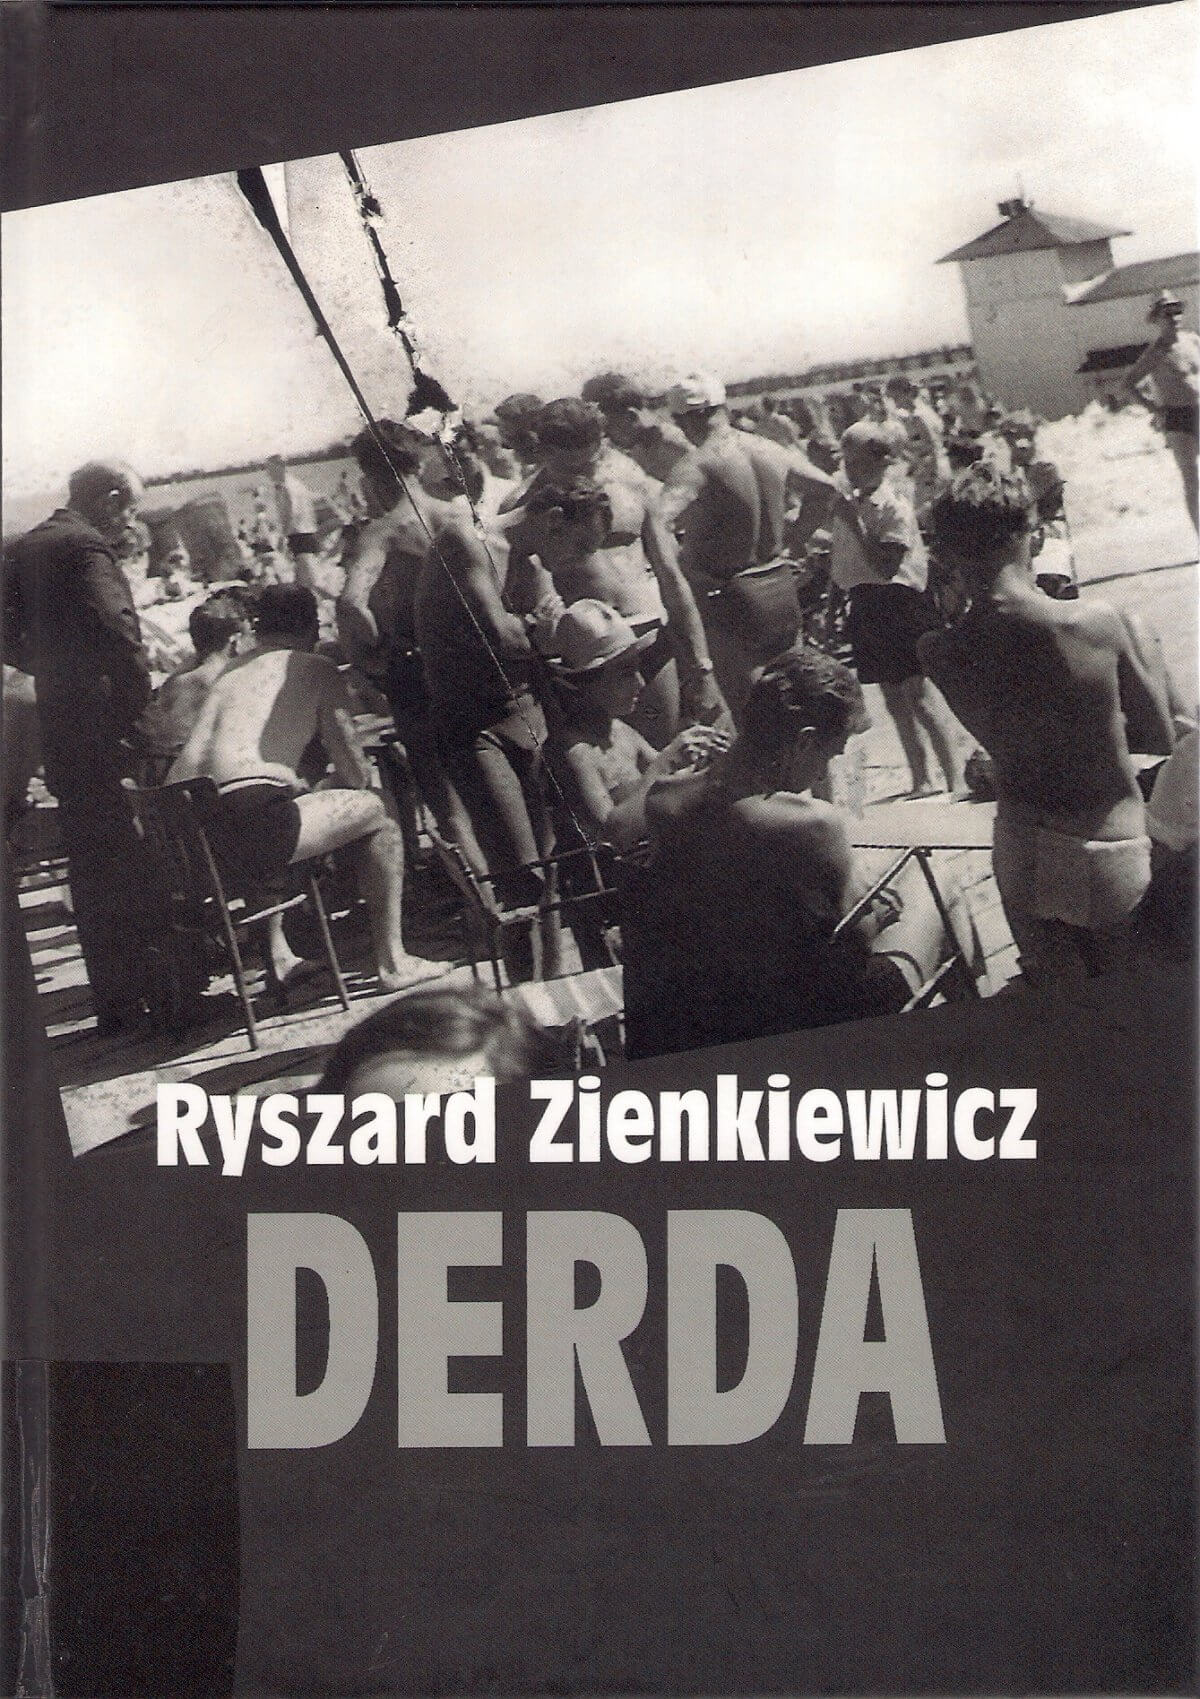 Ryszard Zienkiewicz, Derda”, wyd. Wojewódzka i Miejska Biblioteka Publiczna im. Zbigniewa Herberta w Gorzowie Wlkp., Gorzów Wlkp. 2020, 156 s.